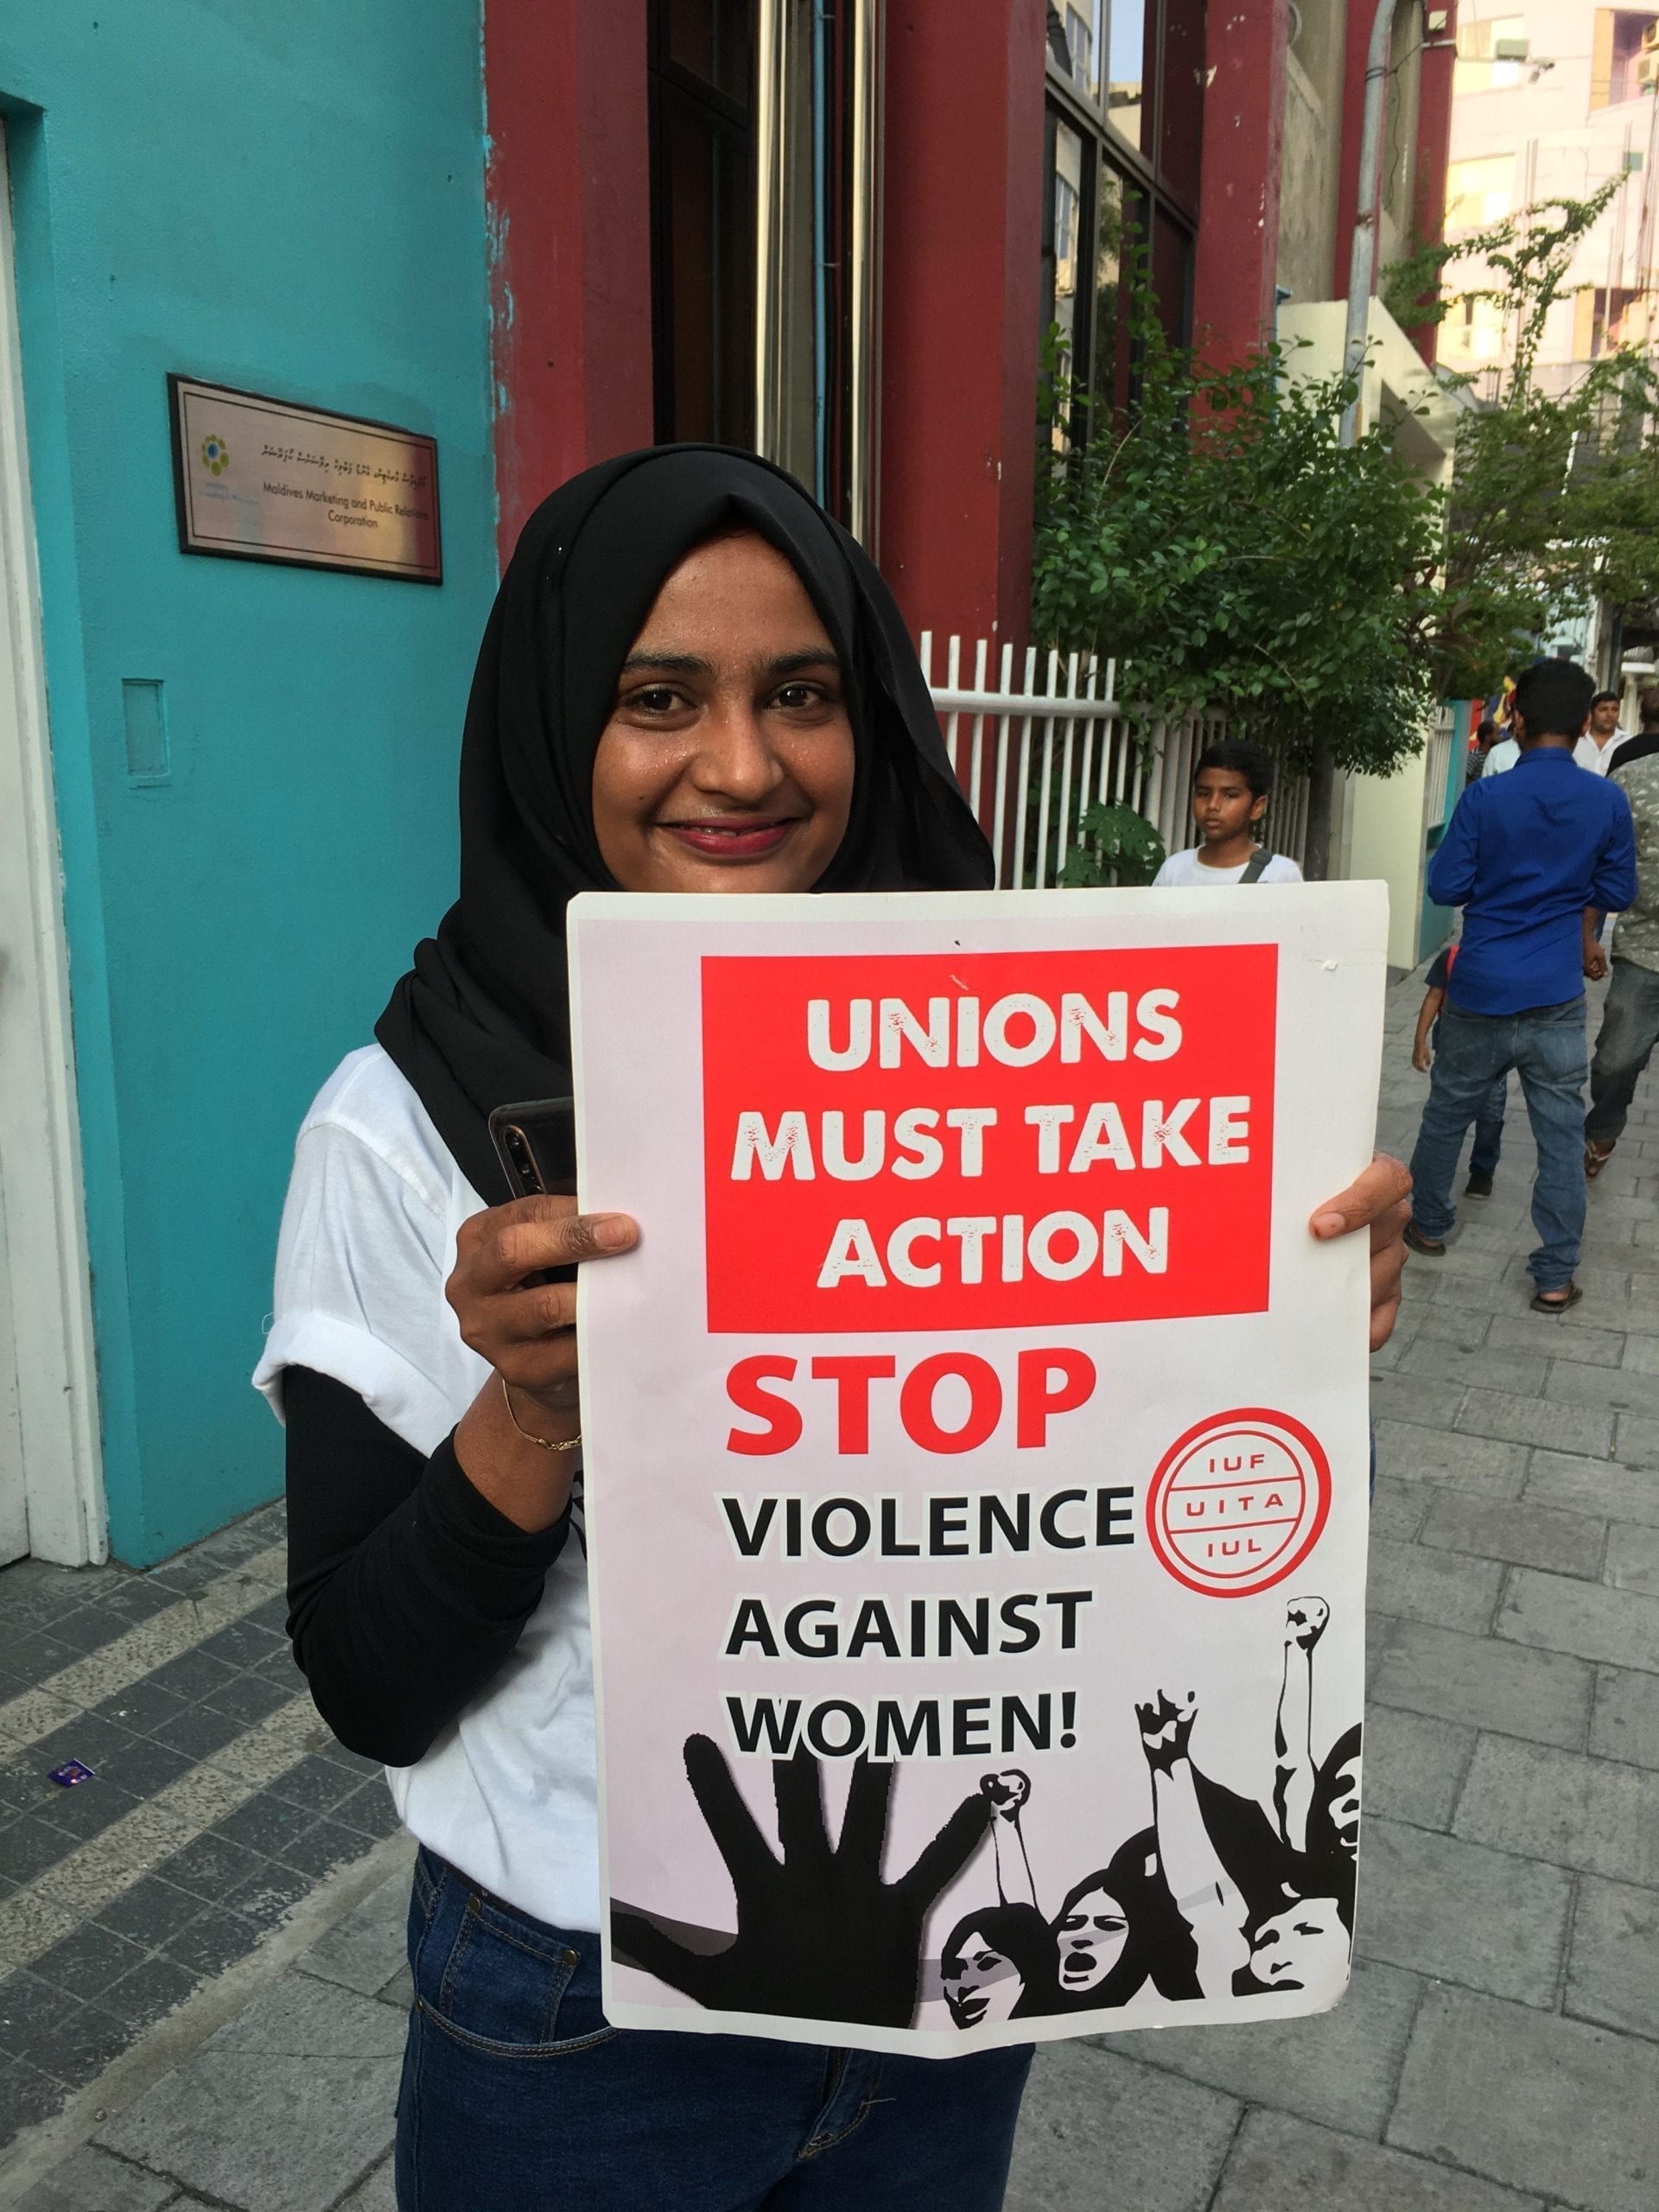 Maldives, May Day 2019, Solidarity Center